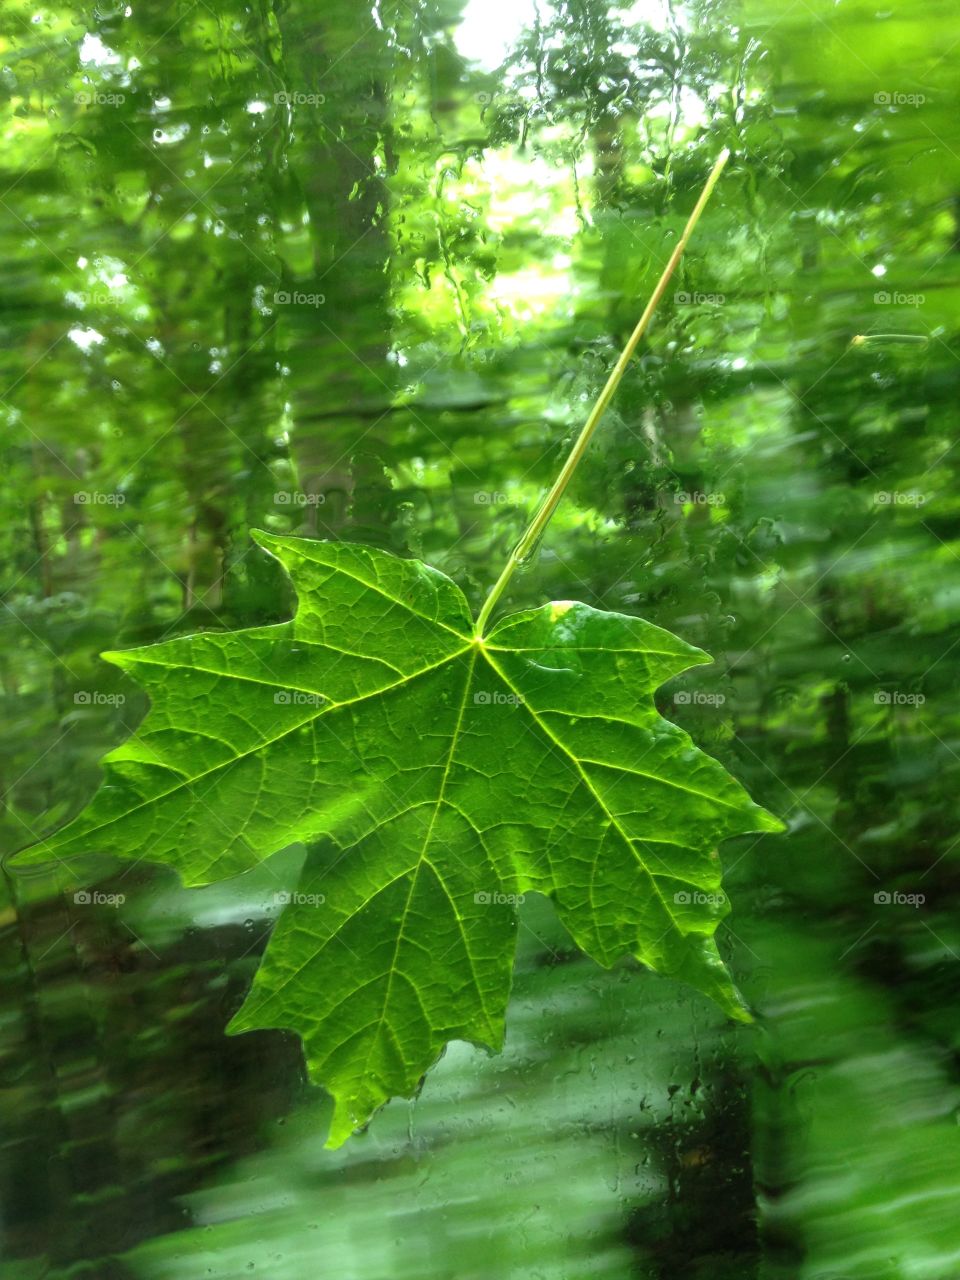 Canadian maple tree leaf